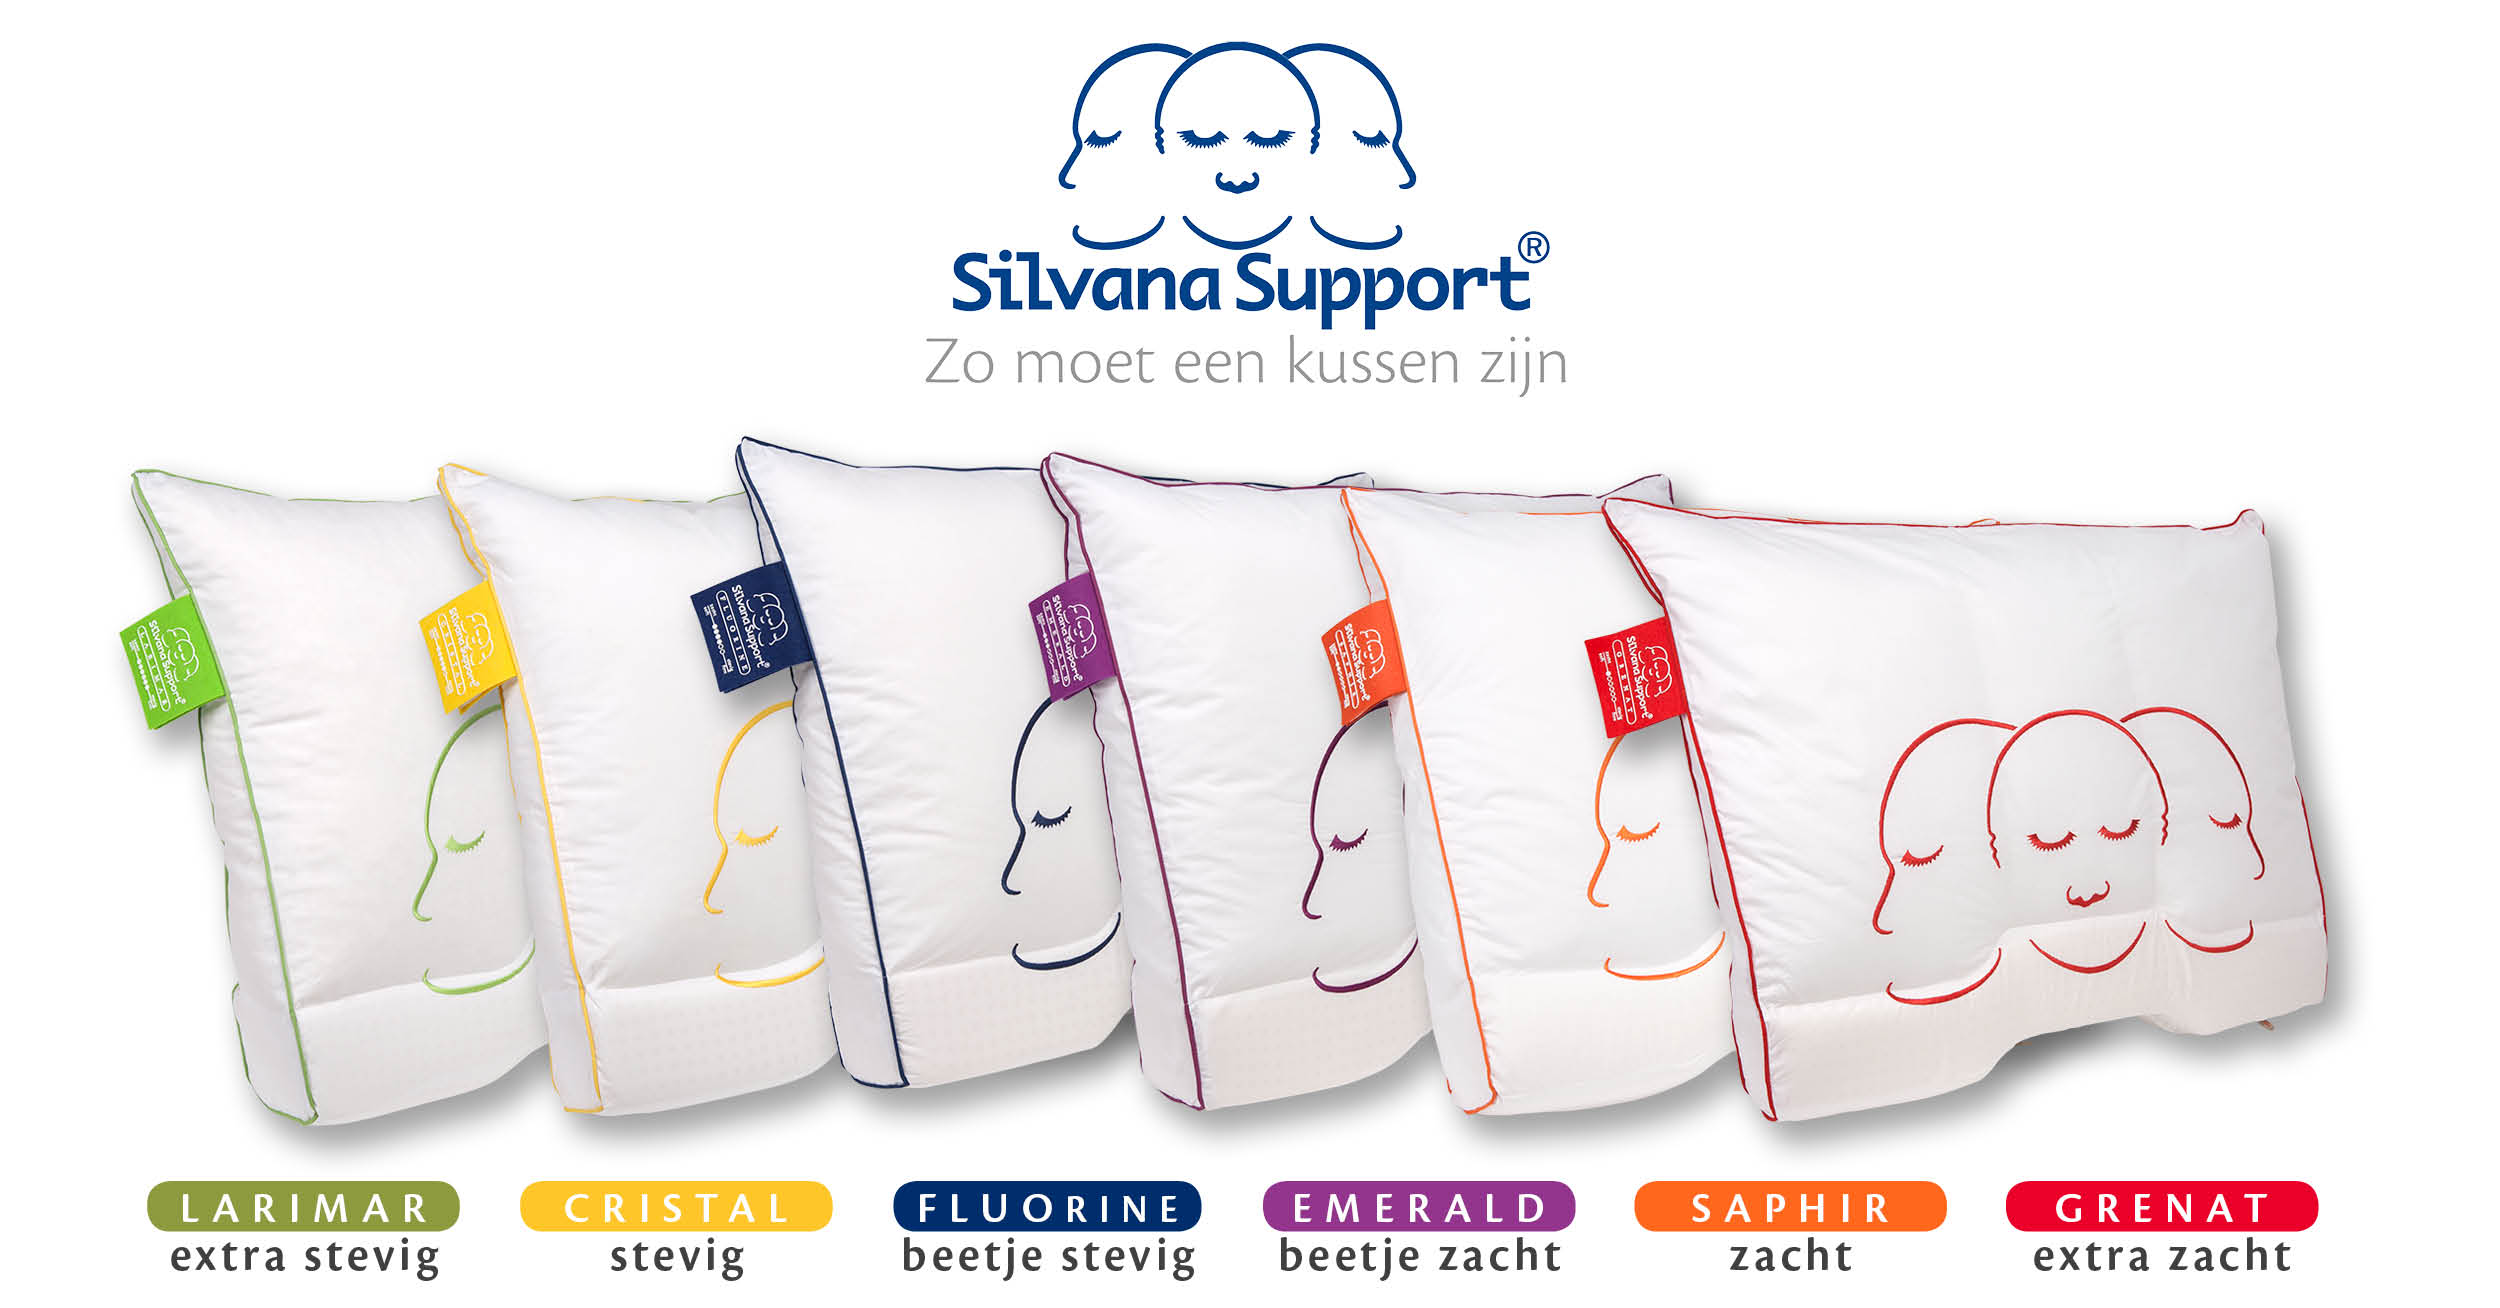 De 6 Silvana Support kussens op rij